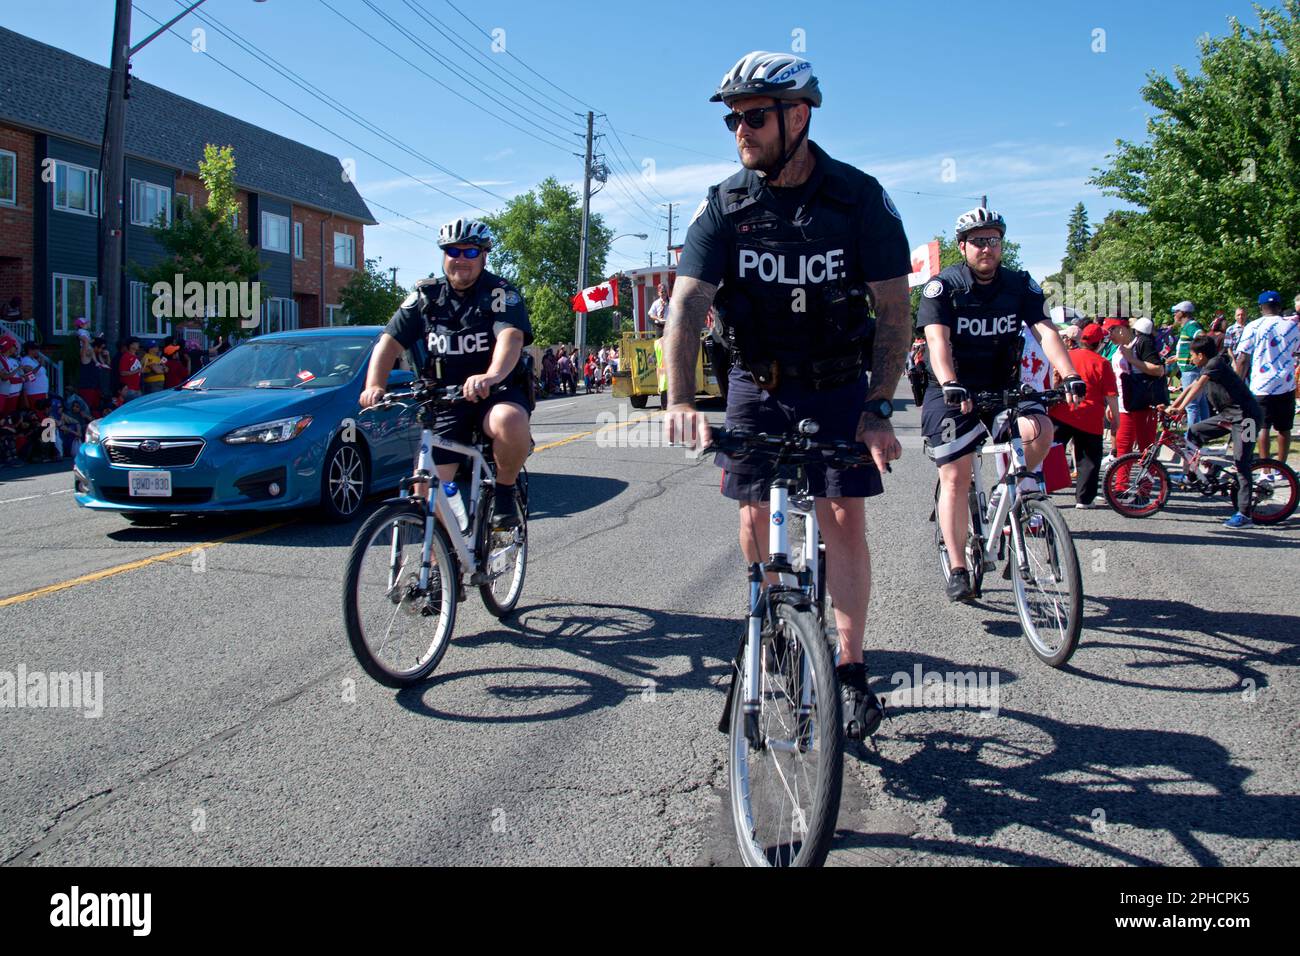 Toronto, Ontario, Kanada - 01/07/2019: Polizei fährt Fahrrad, um die Sicherheit auf der Straße zu gewährleisten Stockfoto